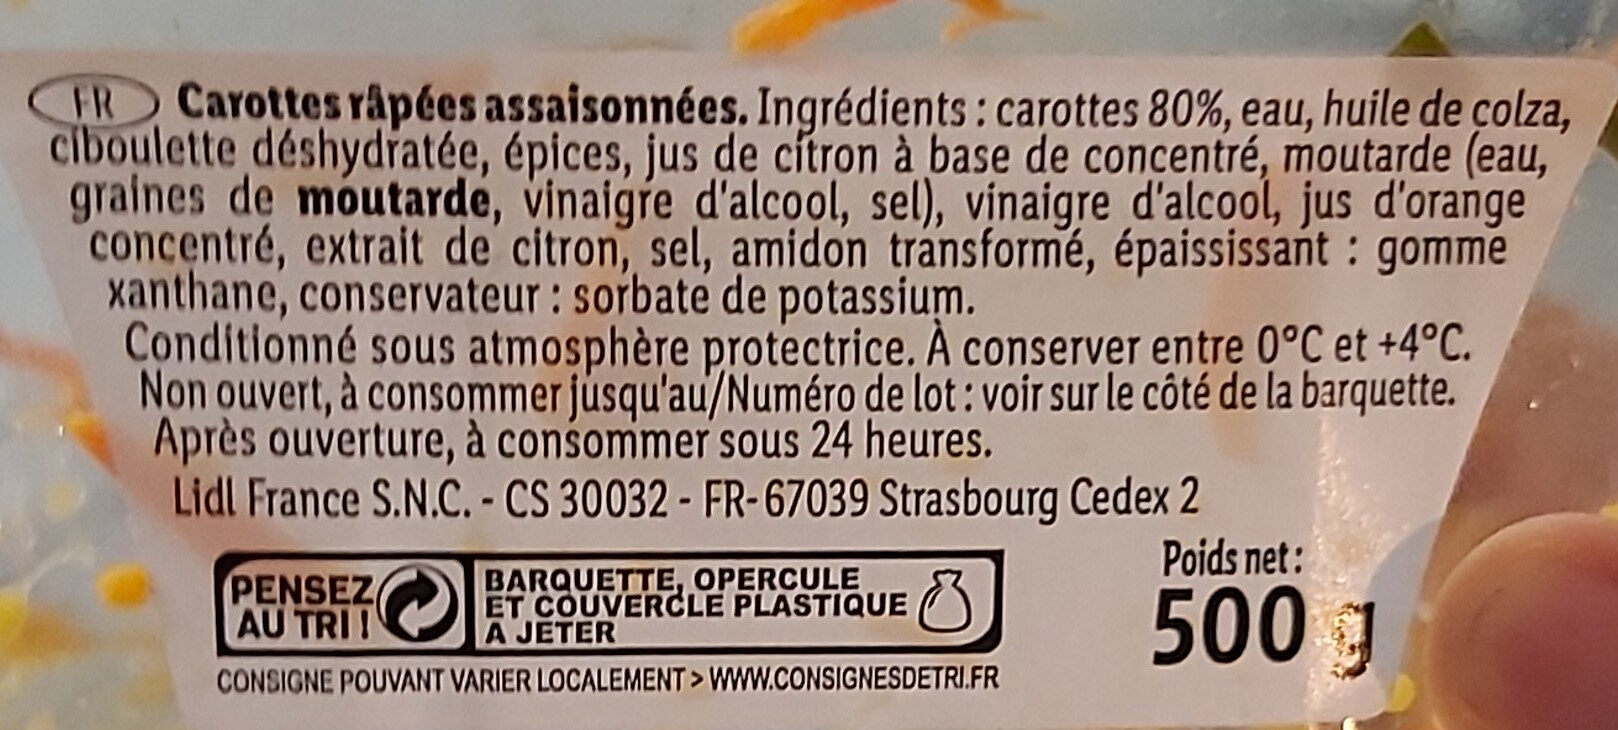 Carottes râpées - Ingrédients - fr